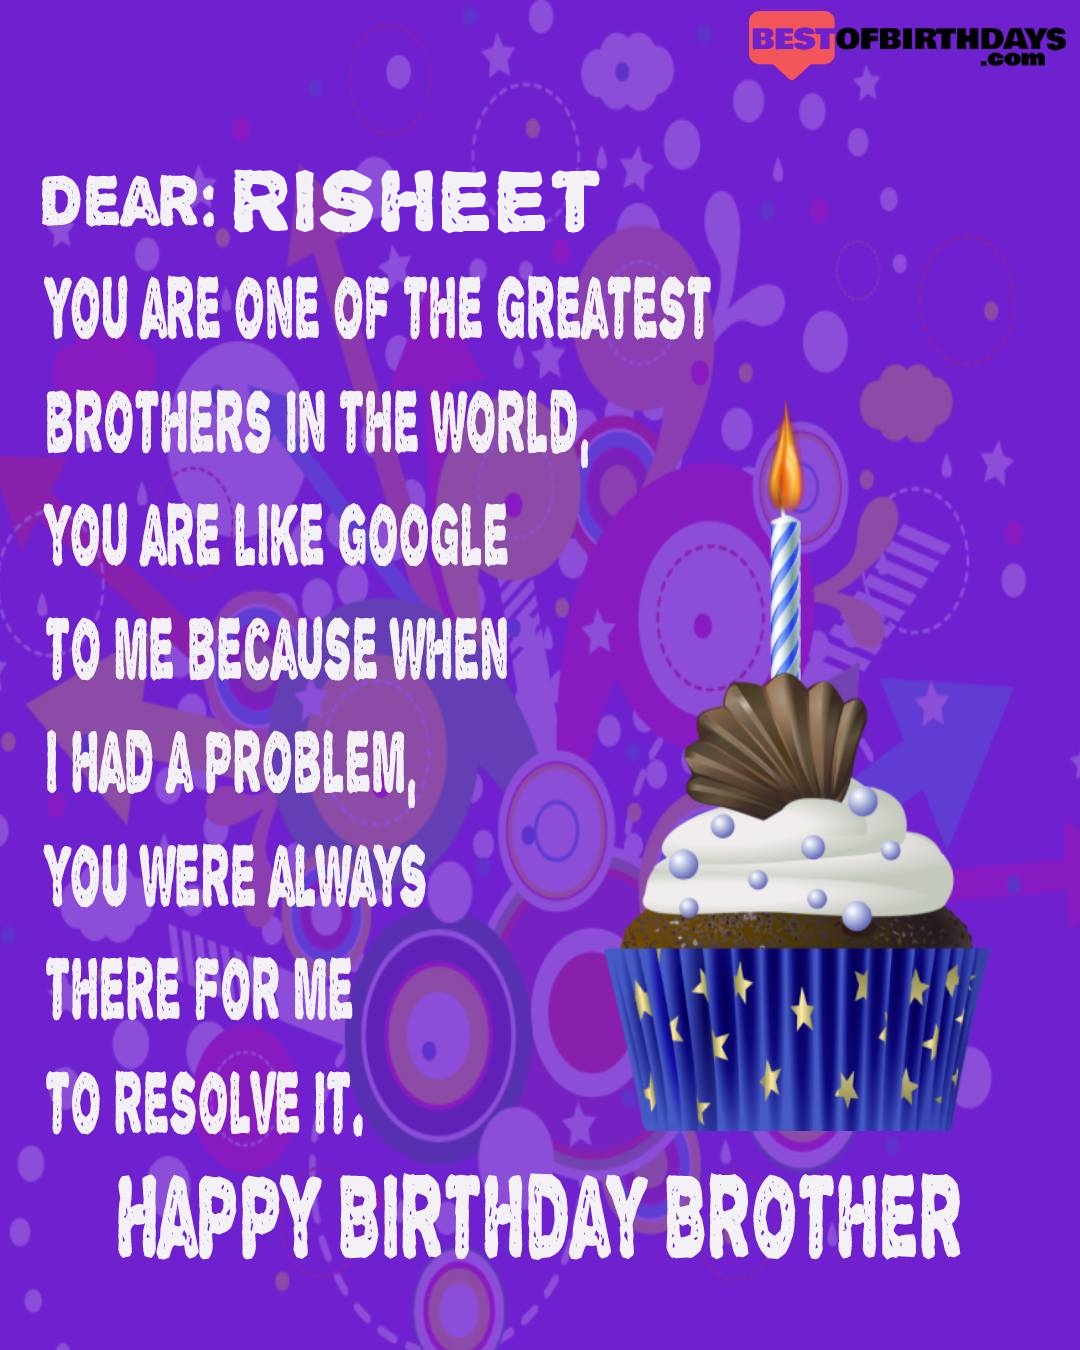 Happy birthday risheet bhai brother bro